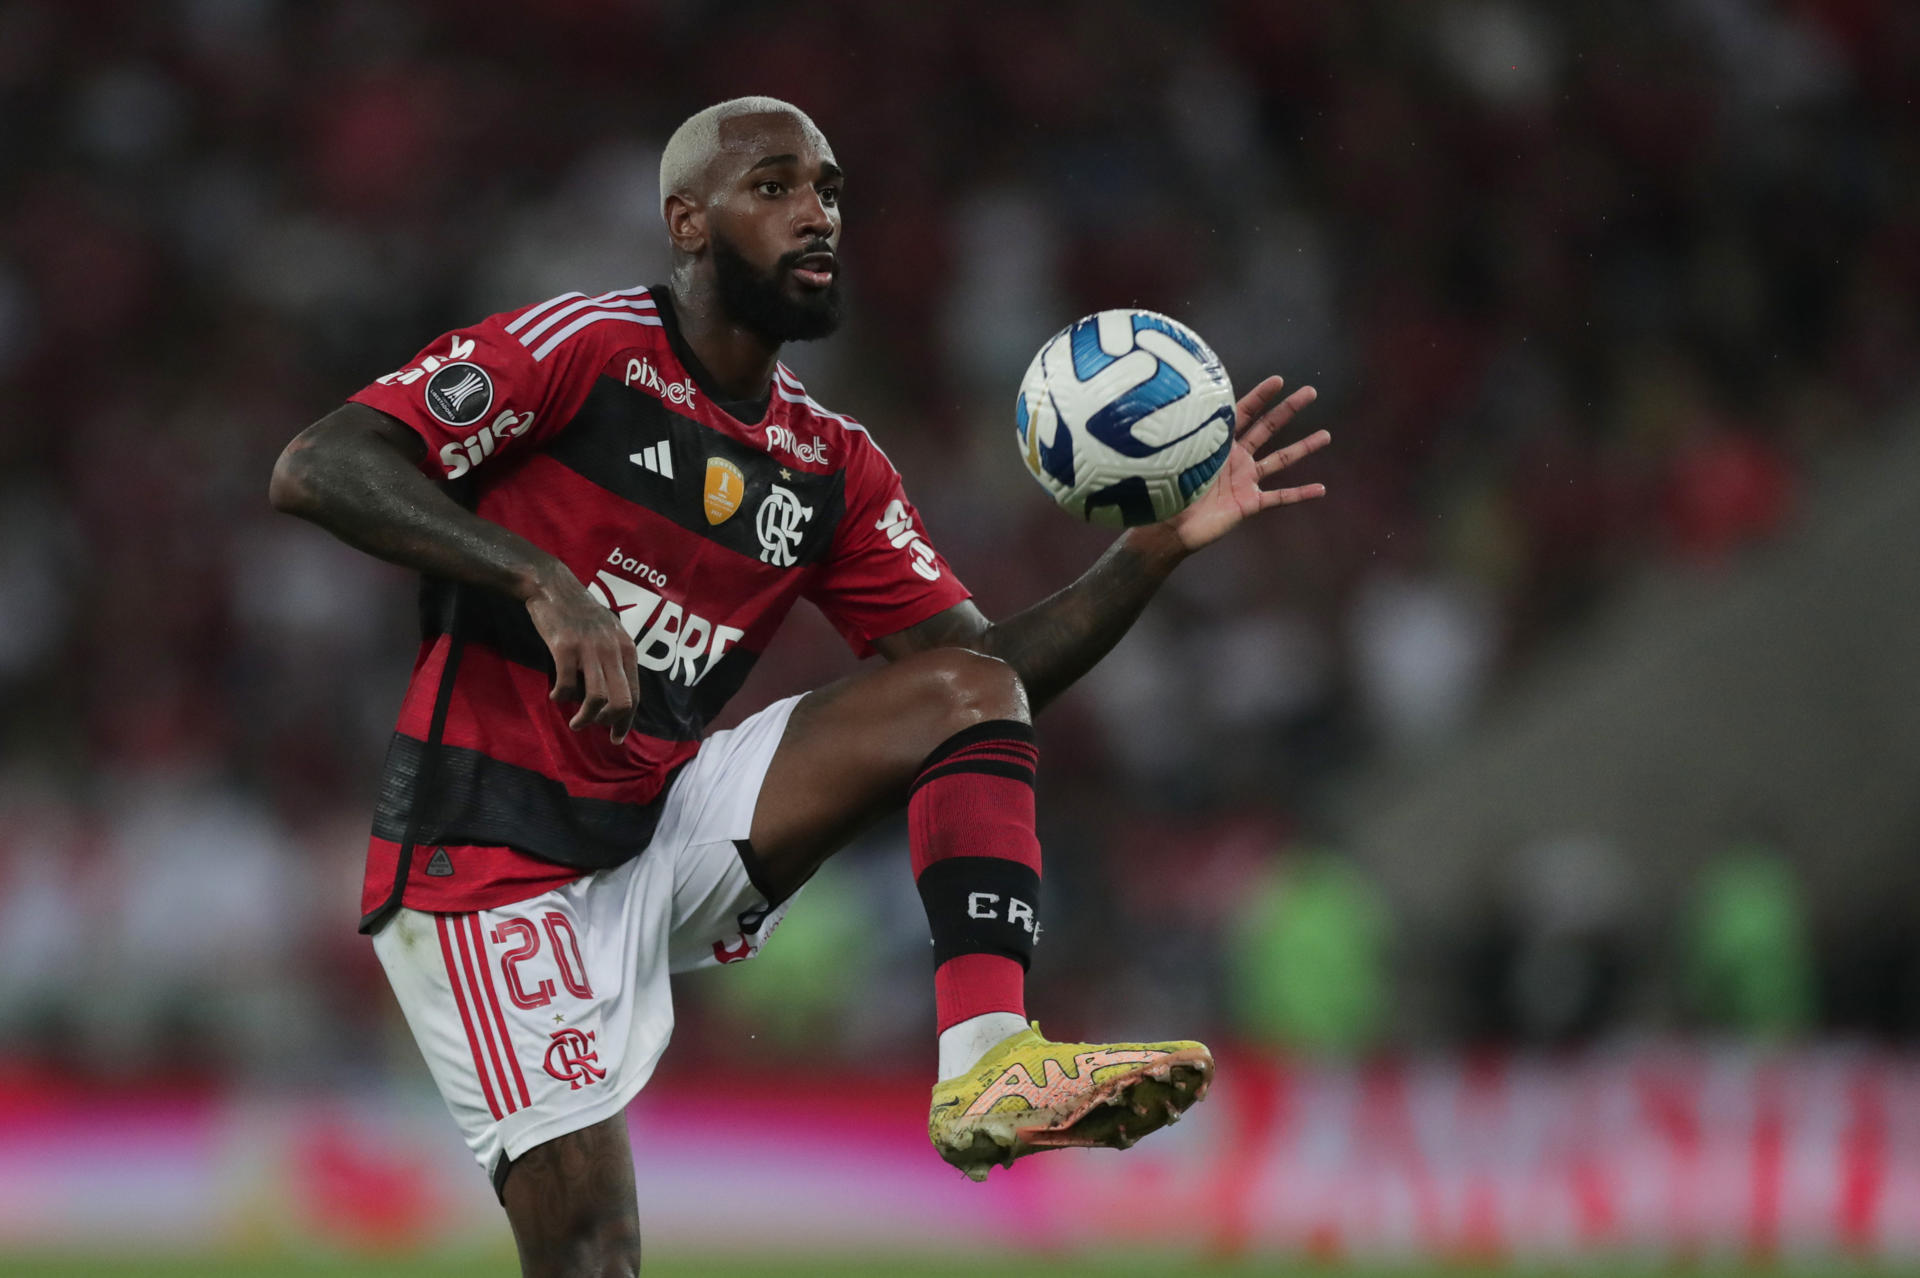 lt Flamengo cede empate en el Maracaná y pierde oportunidad de acercarse al líder Botafogo